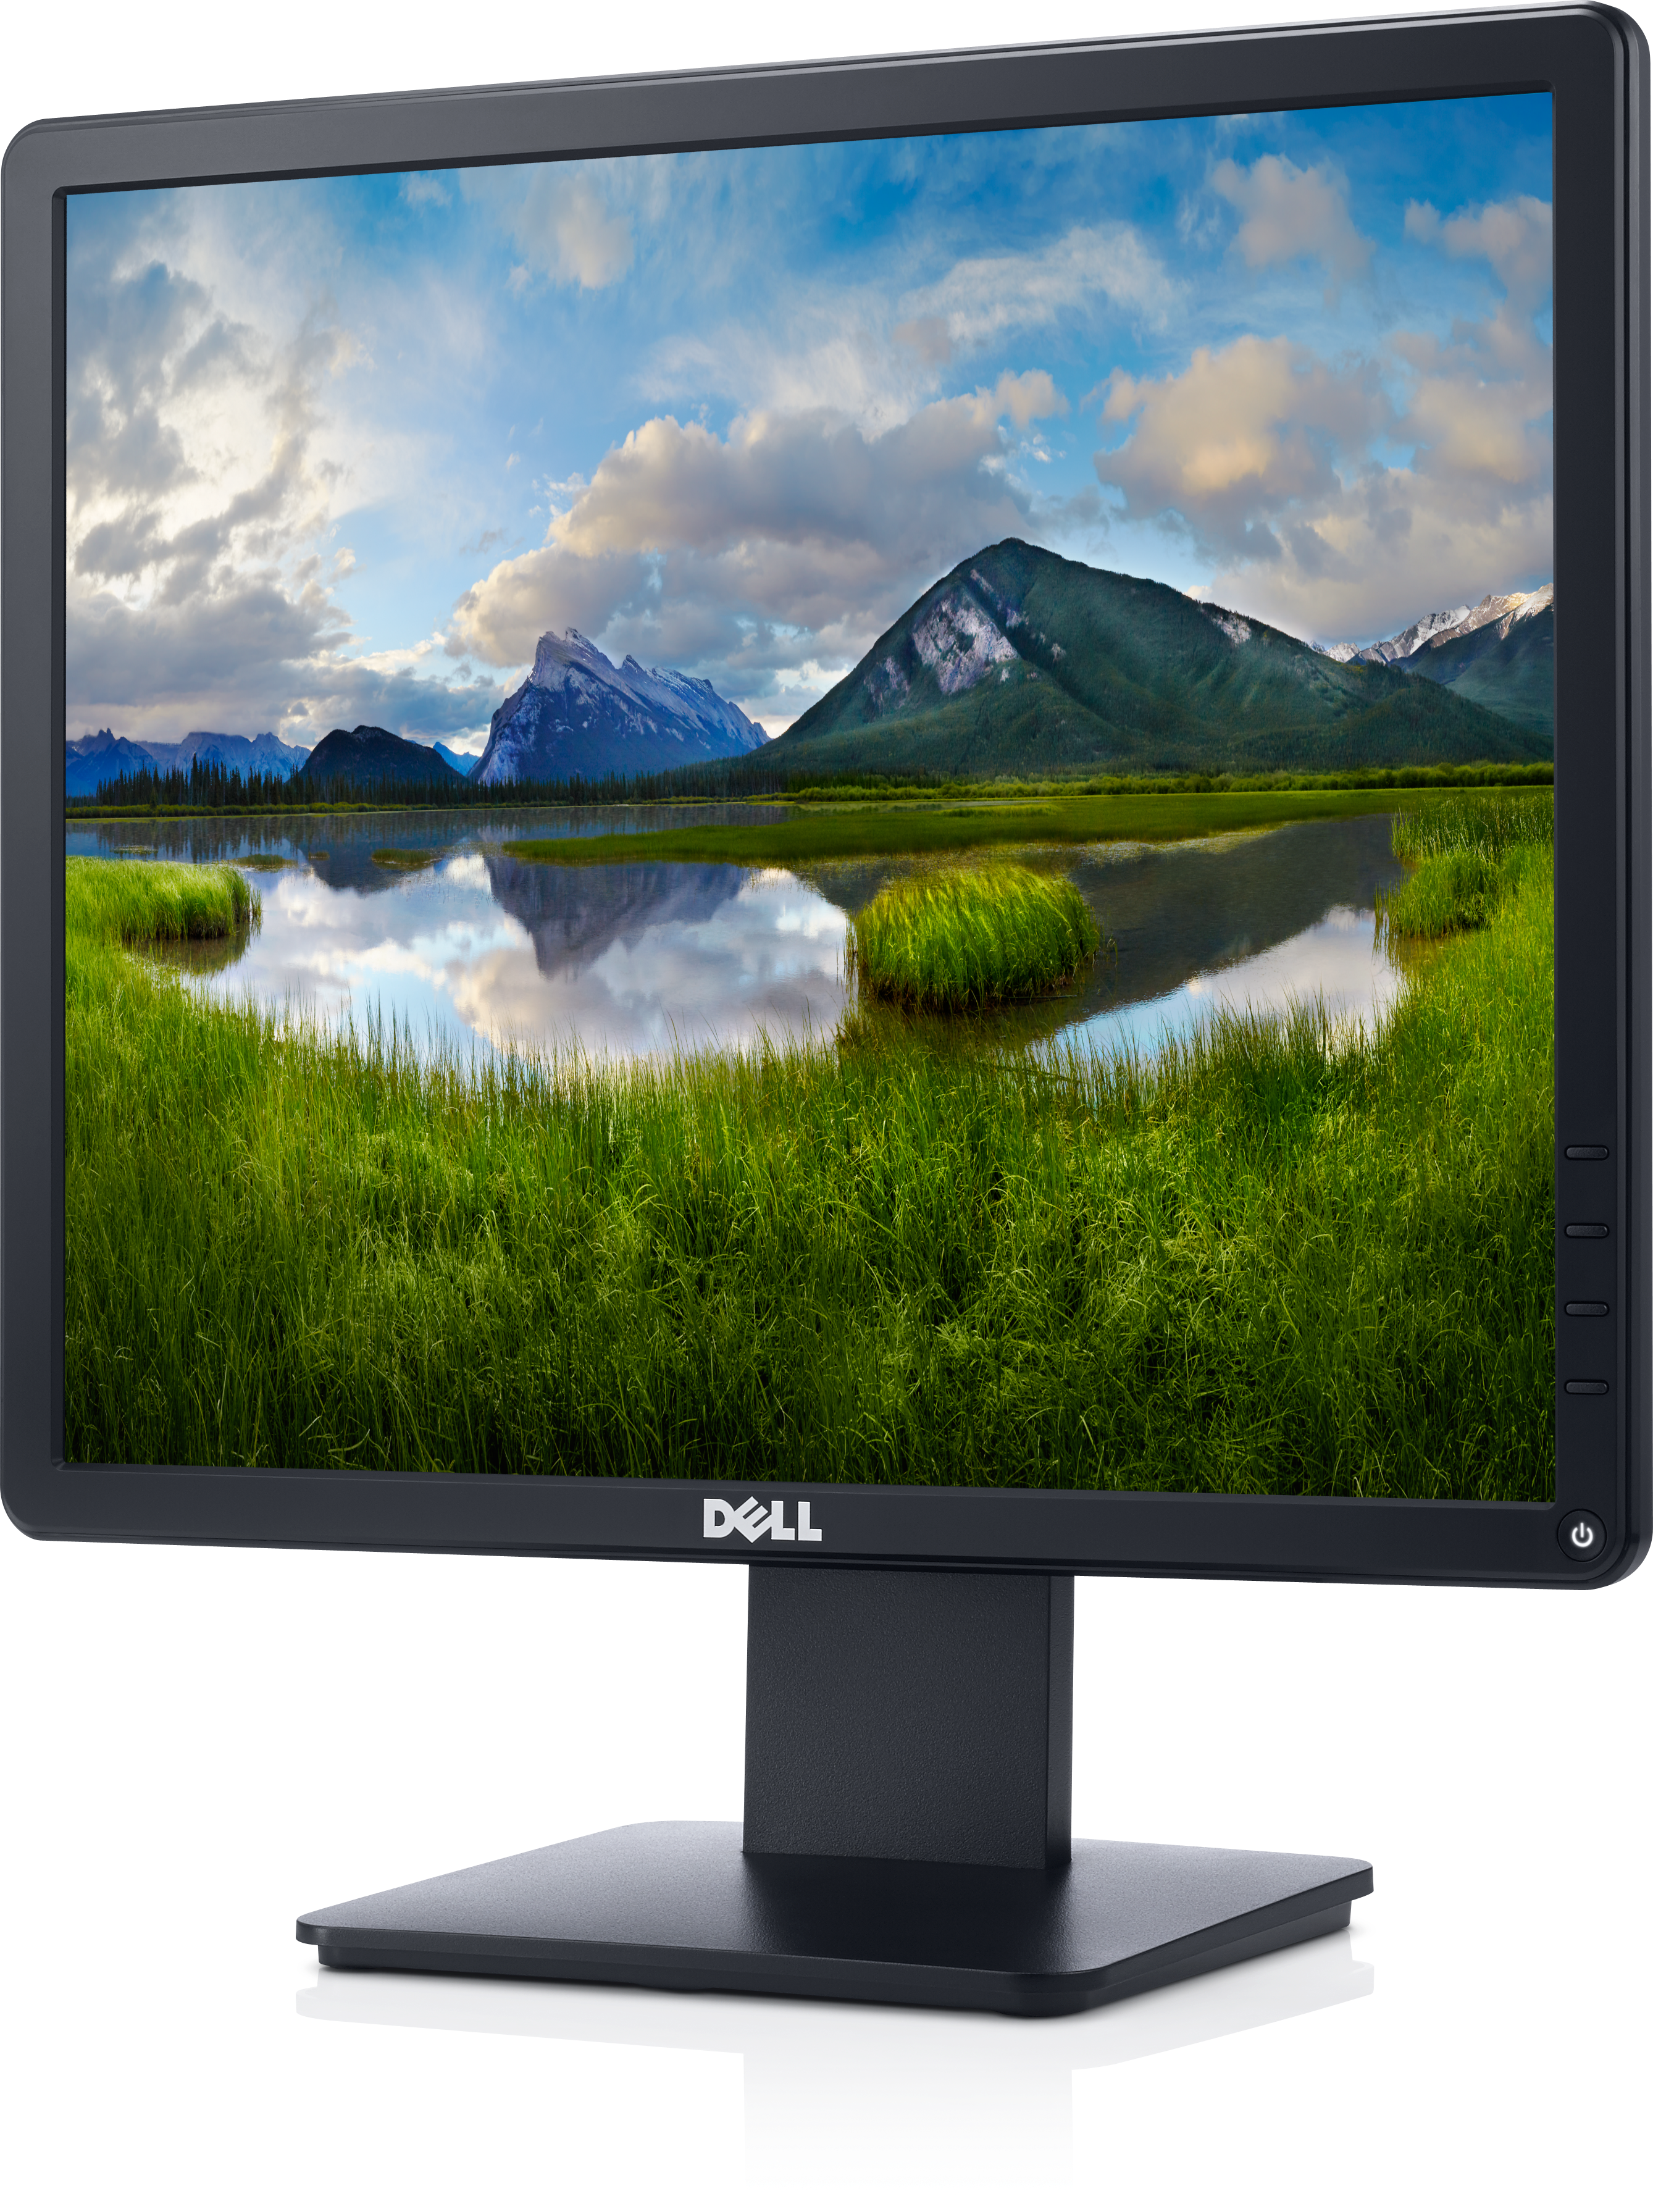 Dell 17 Monitor - E1715S